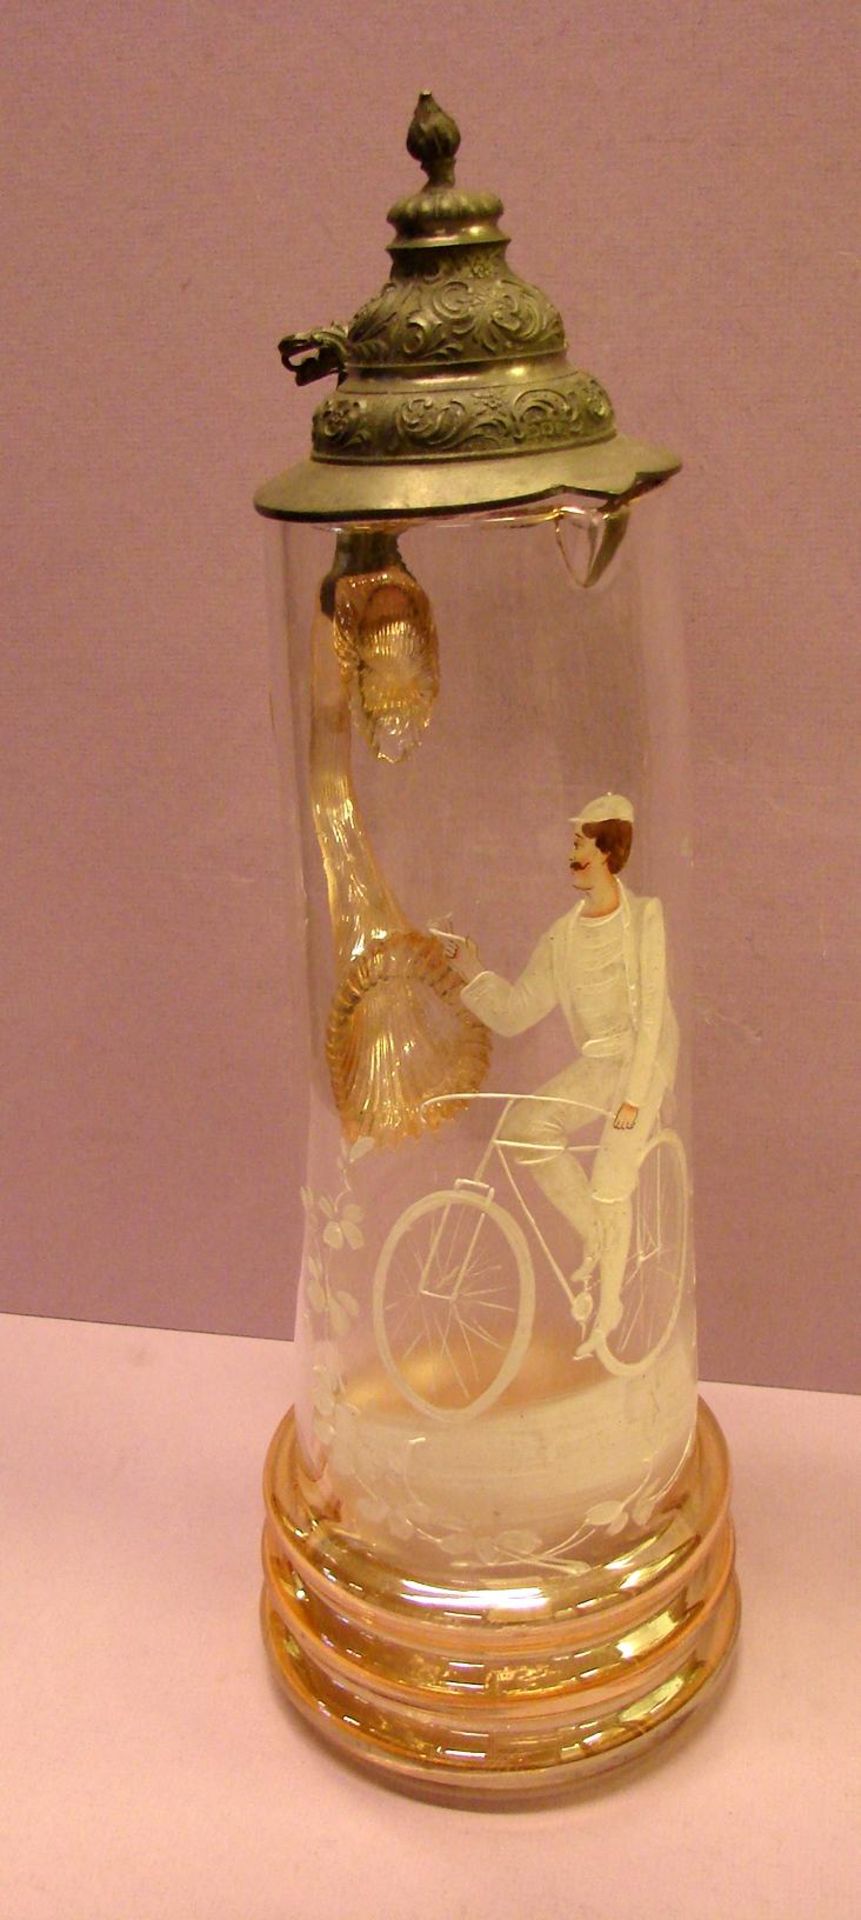 Schenkkanne, Glas/Zinndeckel, mit Henkel, mit Galsmalerei, H. ca. 40 cm- - -22.00 % buyer's